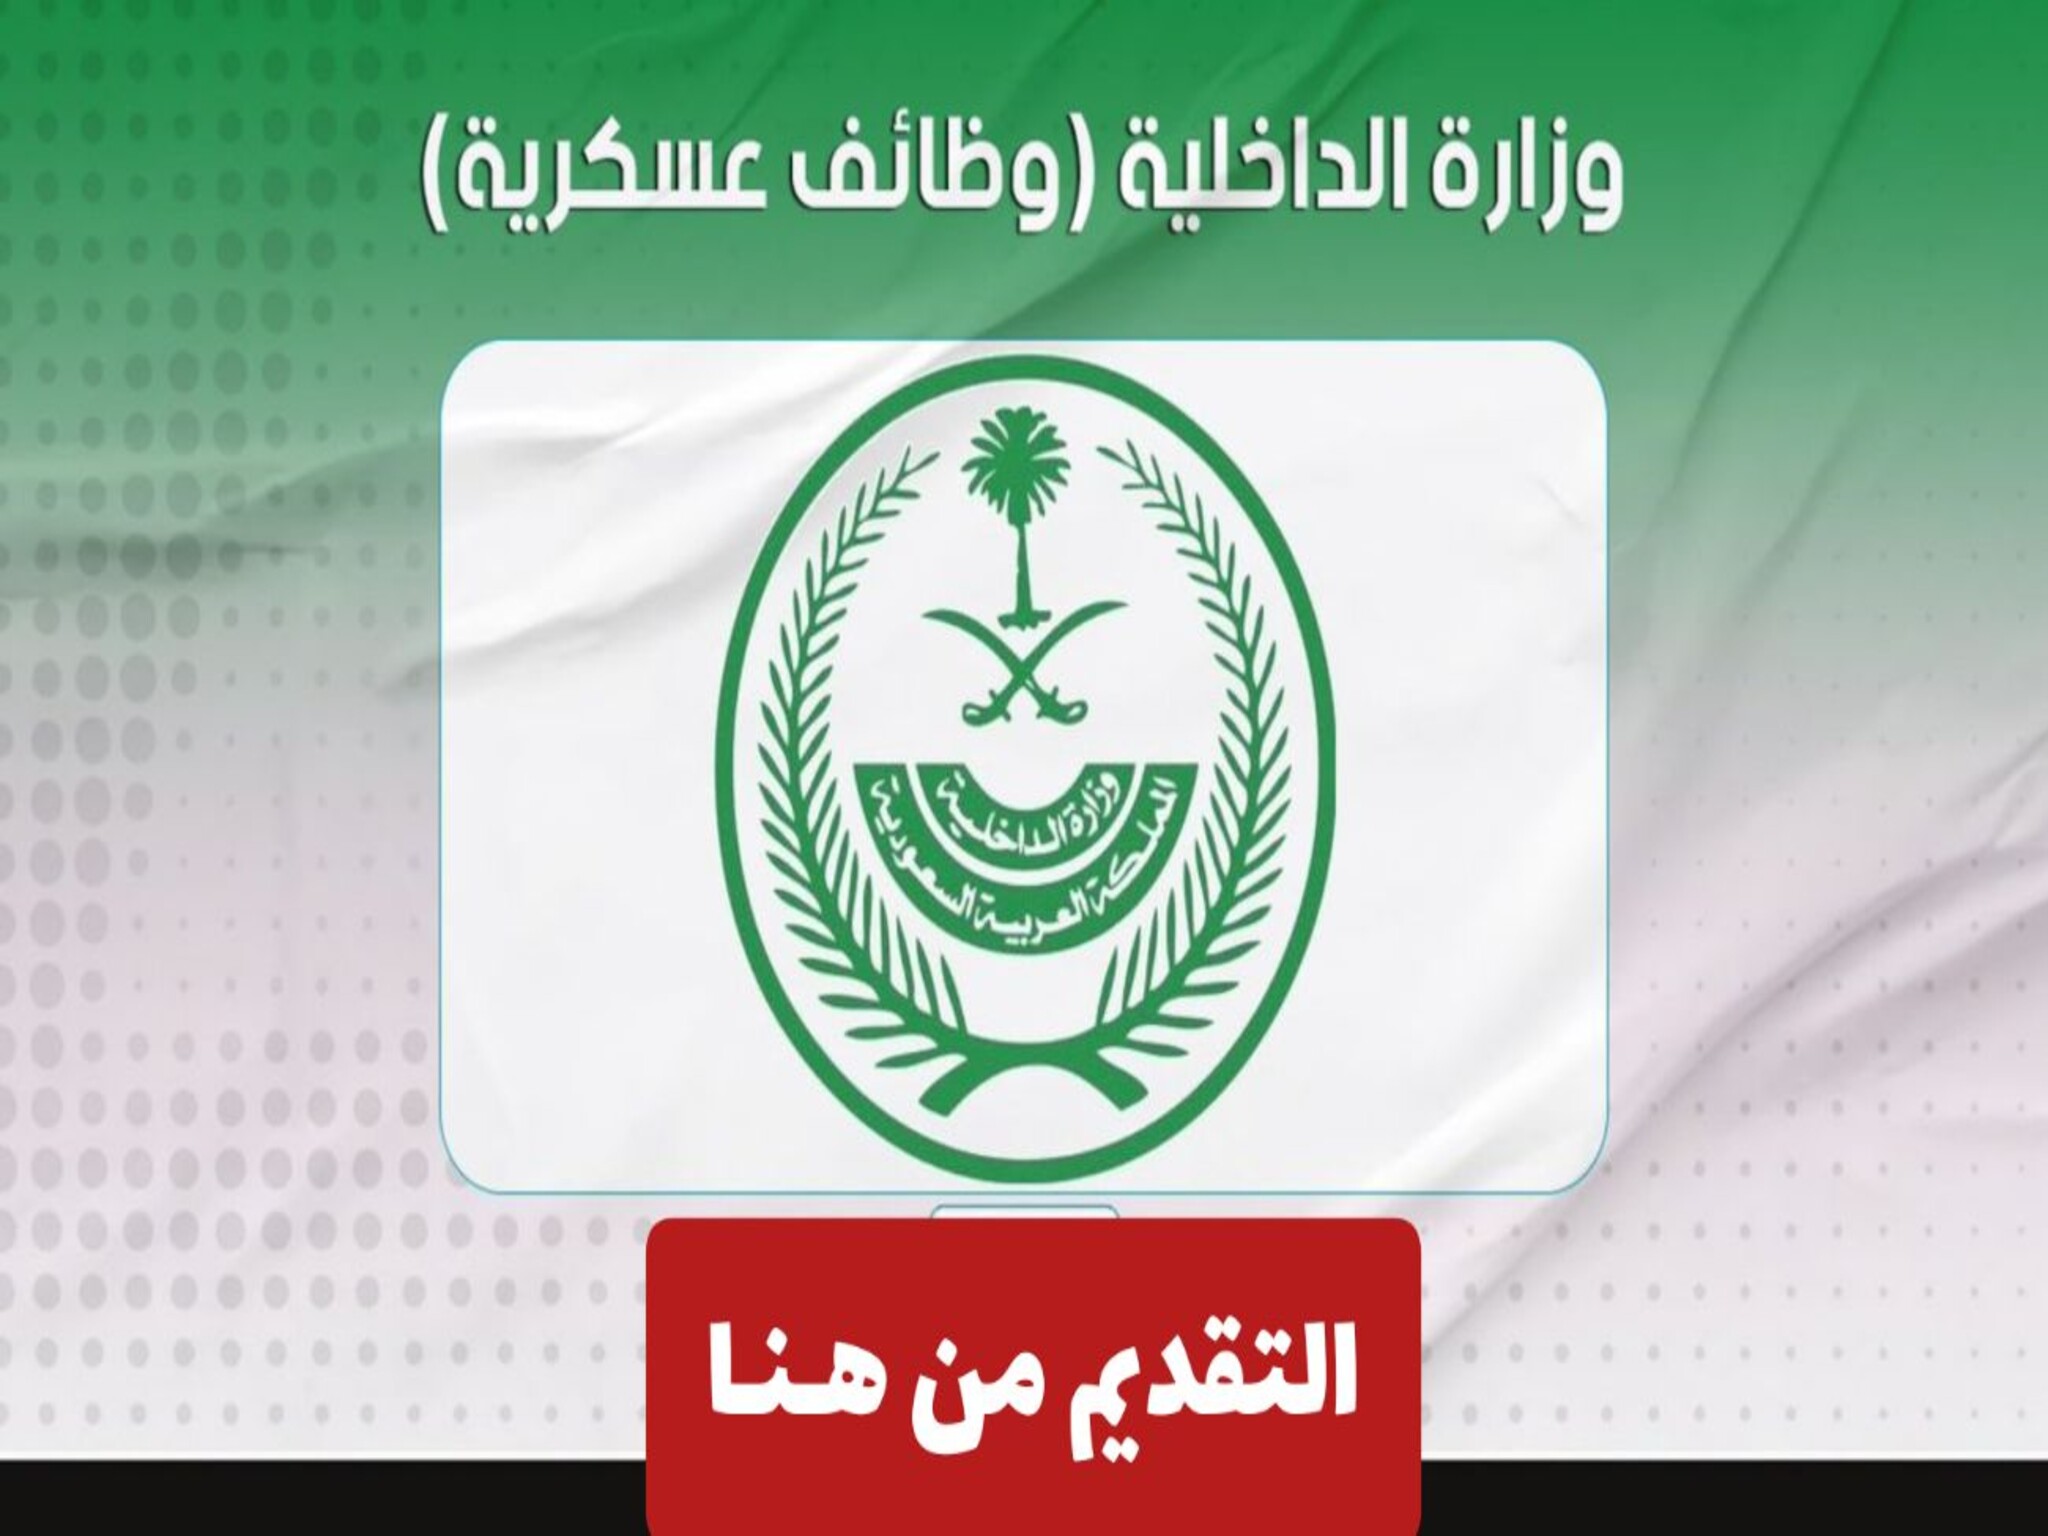 الآن فتح باب التسجيل في وزارة الداخلية السعودية (1445ــ2024 )والاوراق المطلوبة 